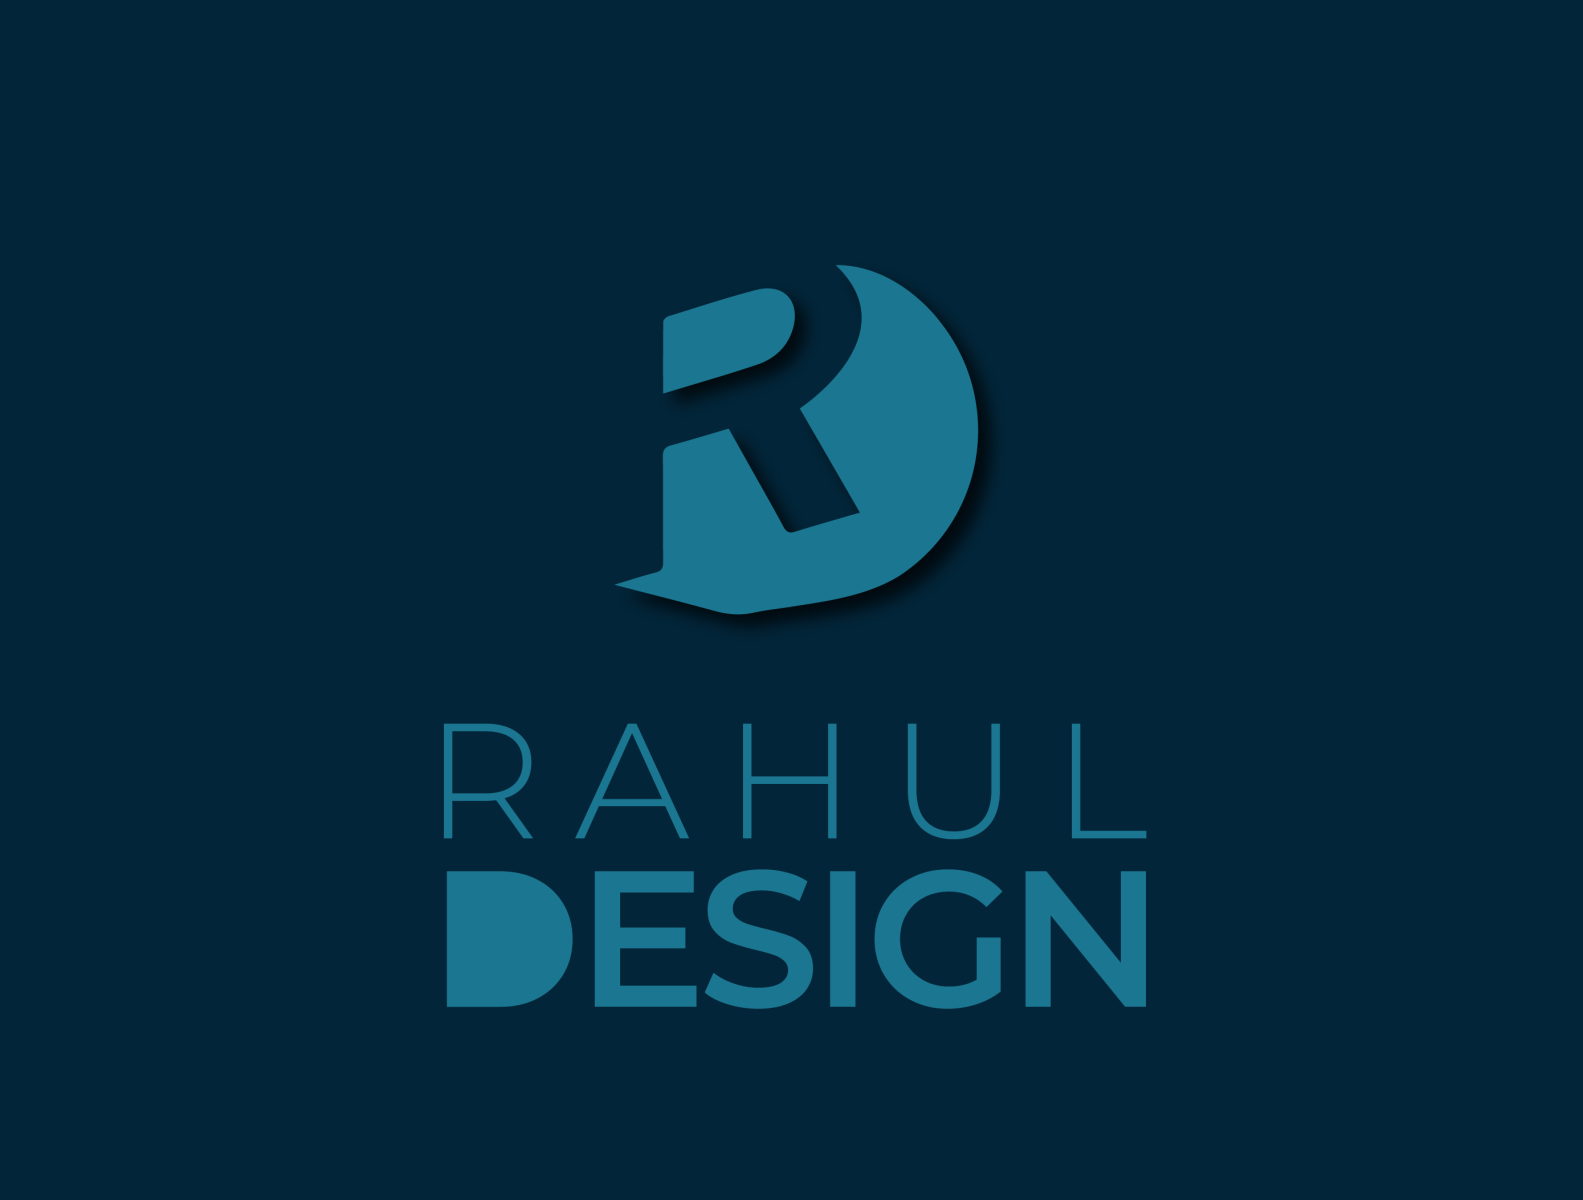 Dj Rahul Rock Chhapra - Musician - DJI | LinkedIn